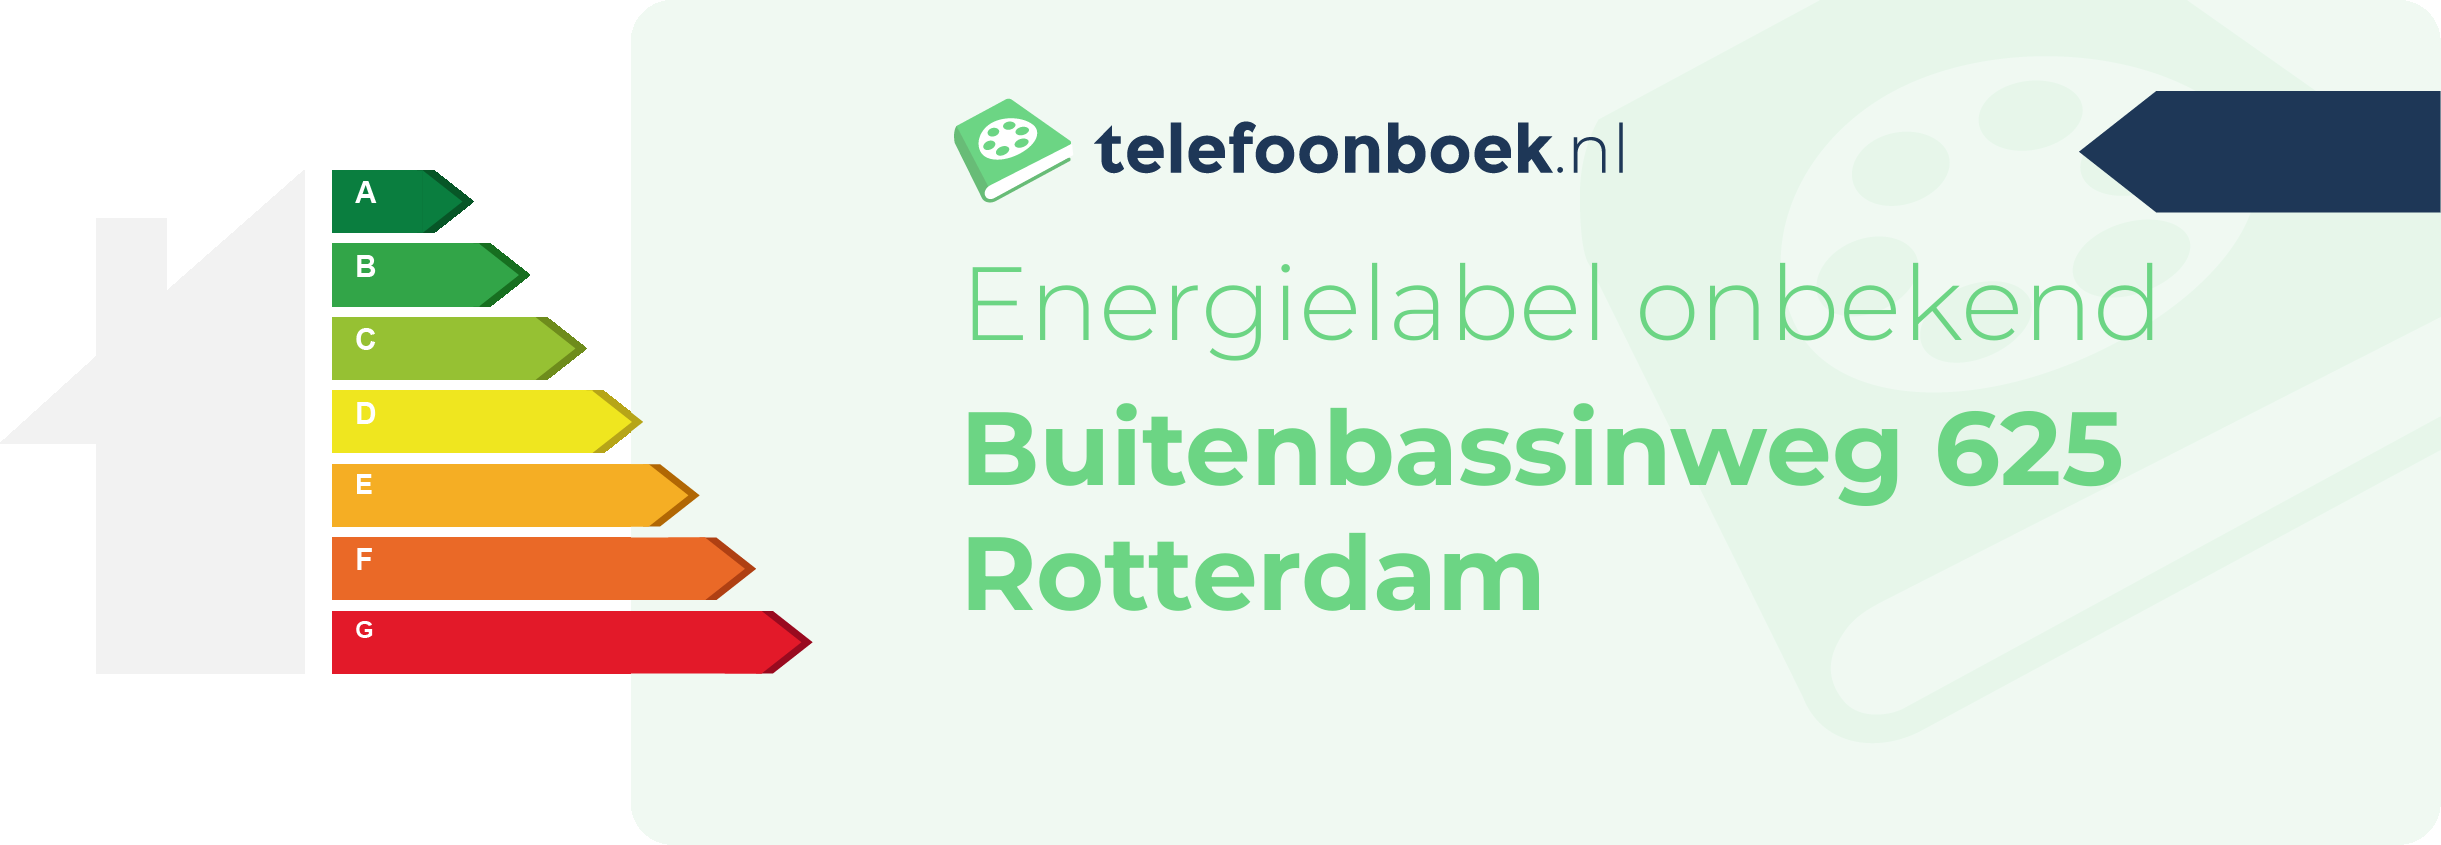 Energielabel Buitenbassinweg 625 Rotterdam